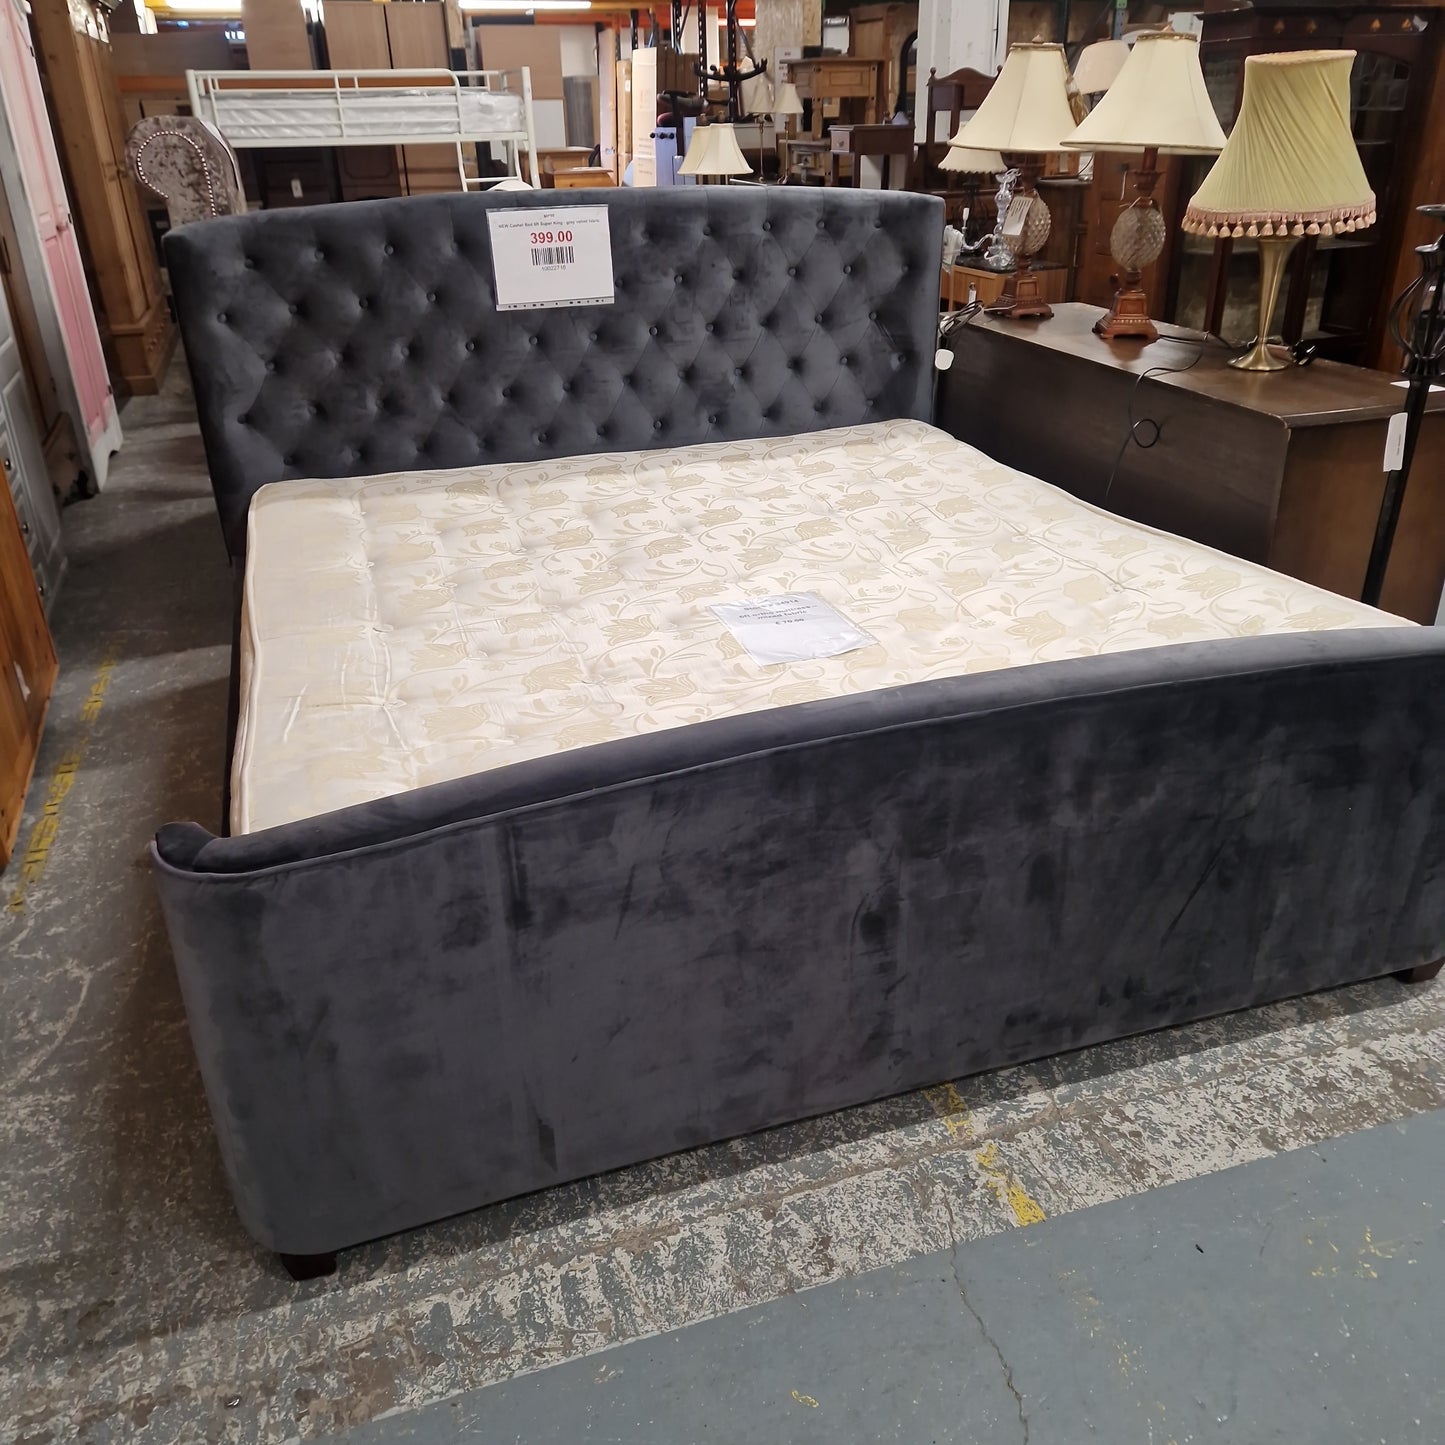 NEW Cashel Bed 6ft Super King - grey velvet fabric